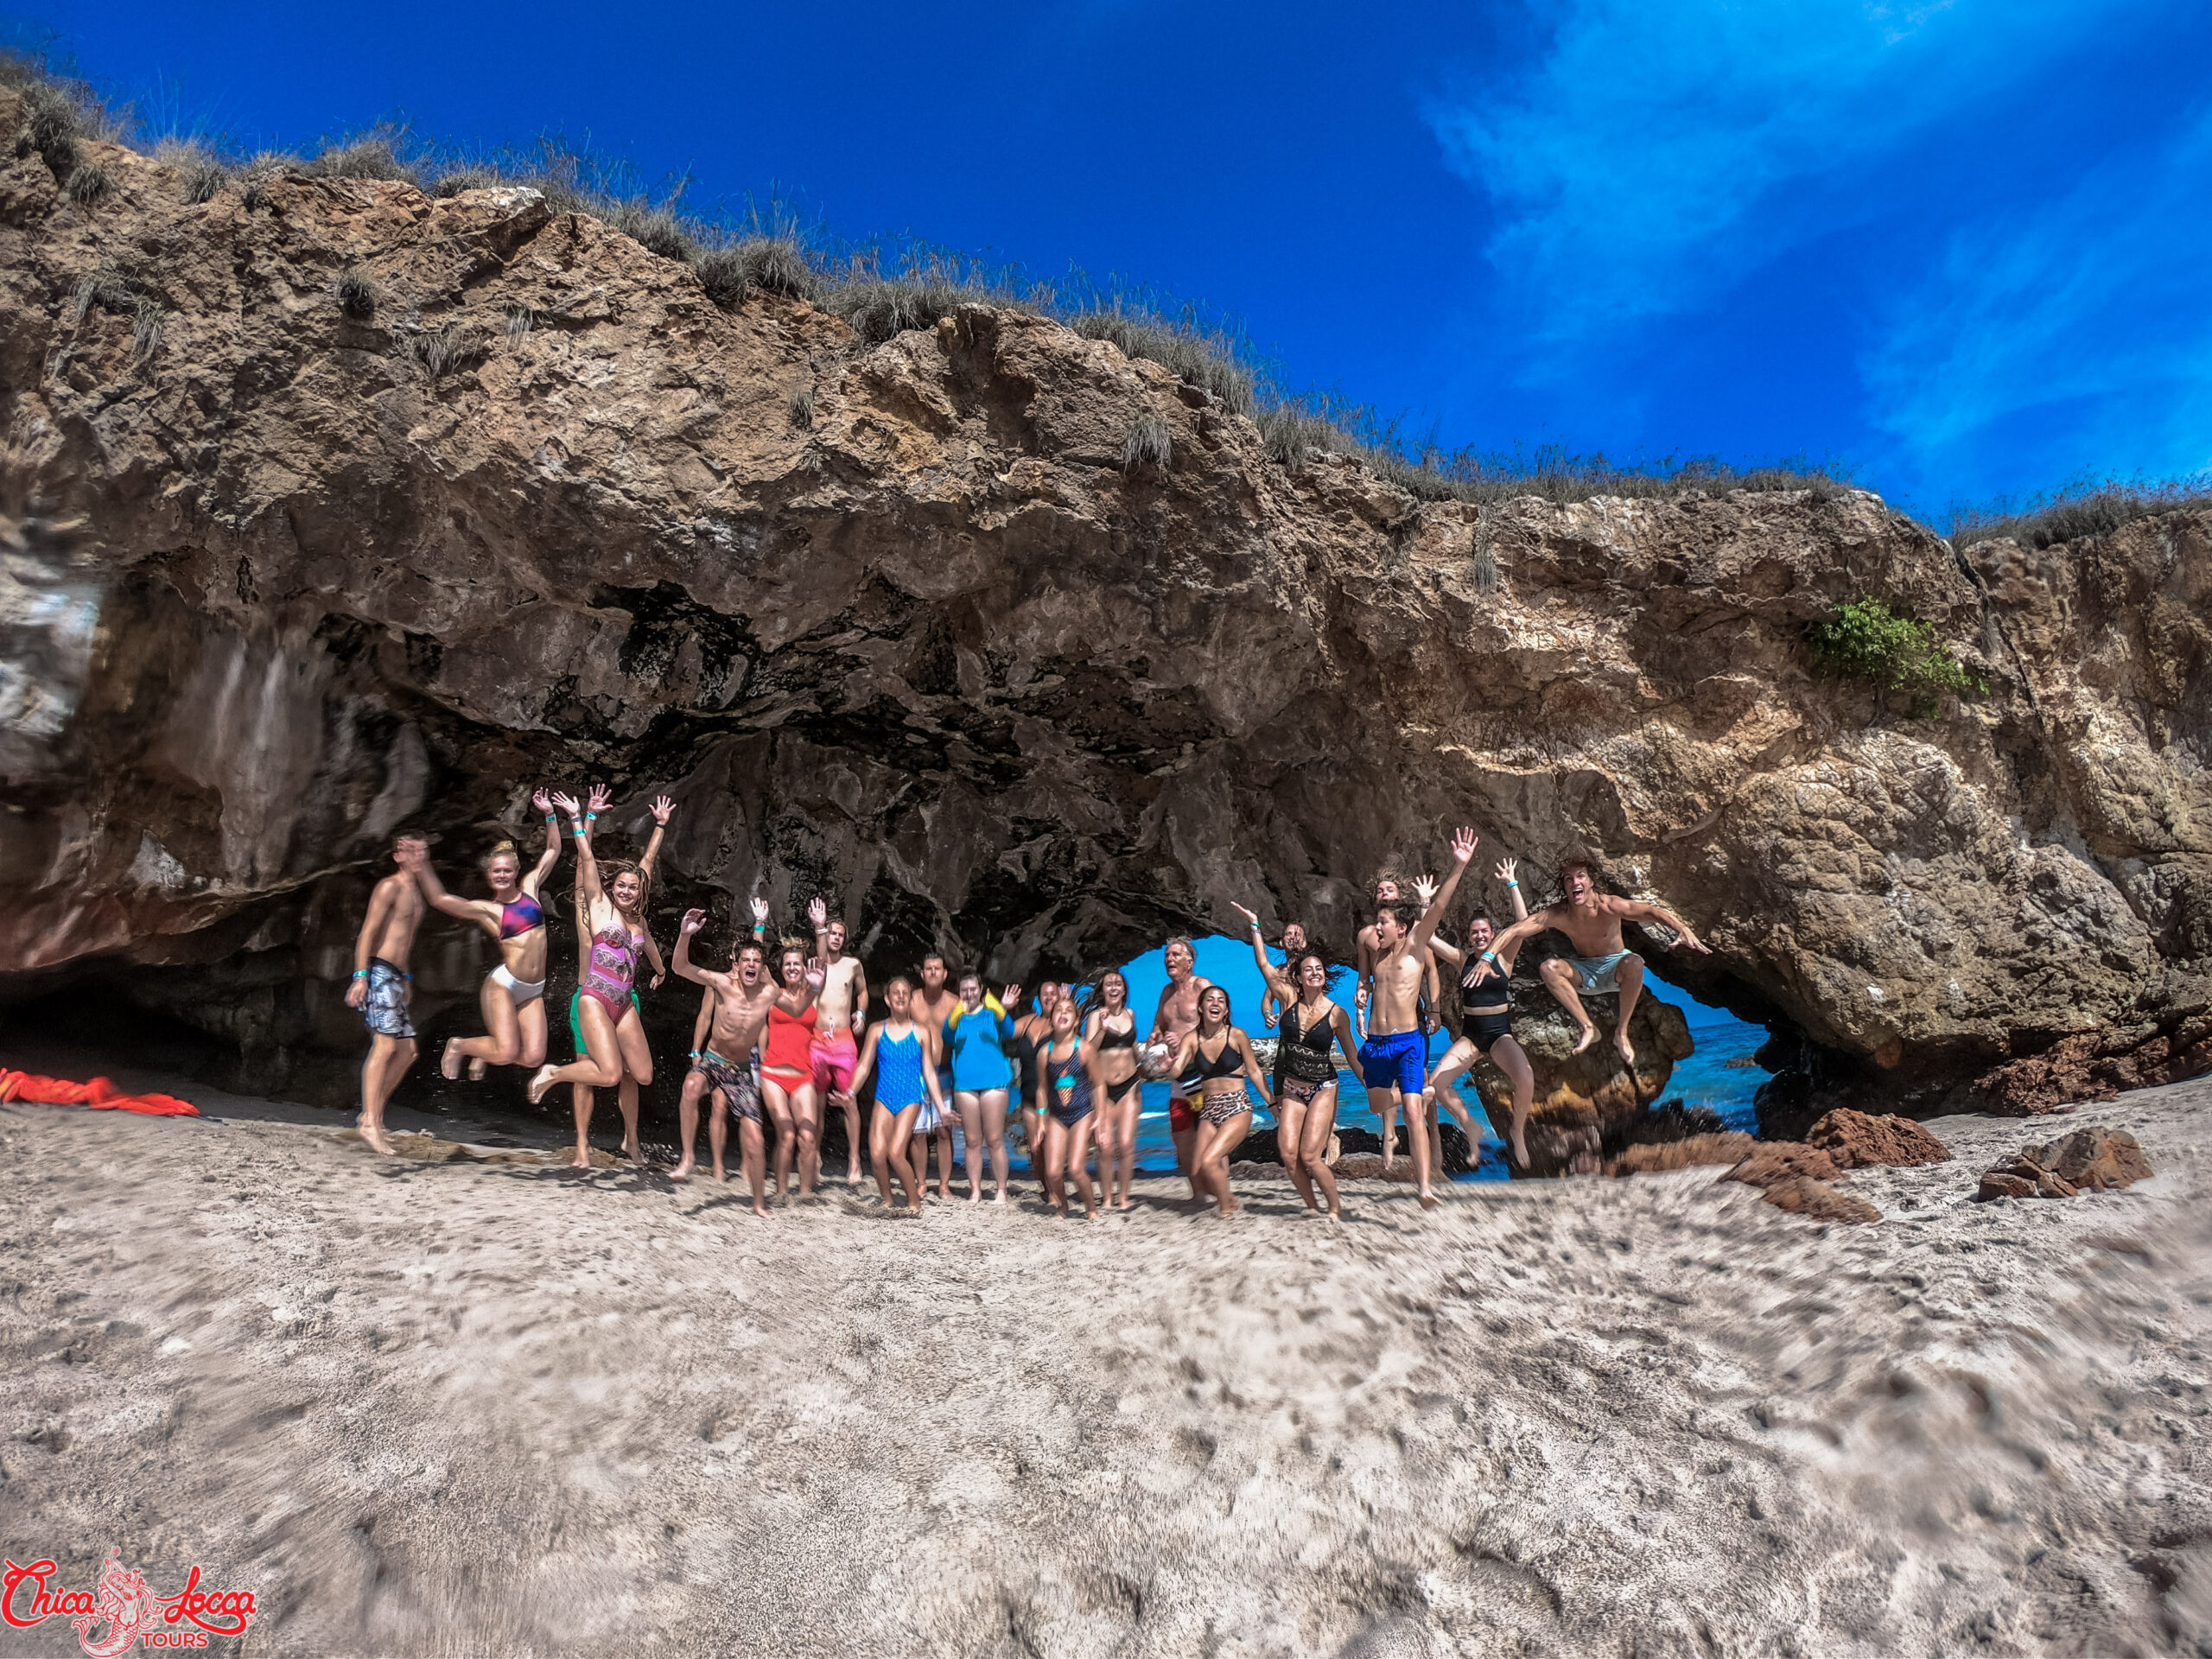 group jumping at hidden beach